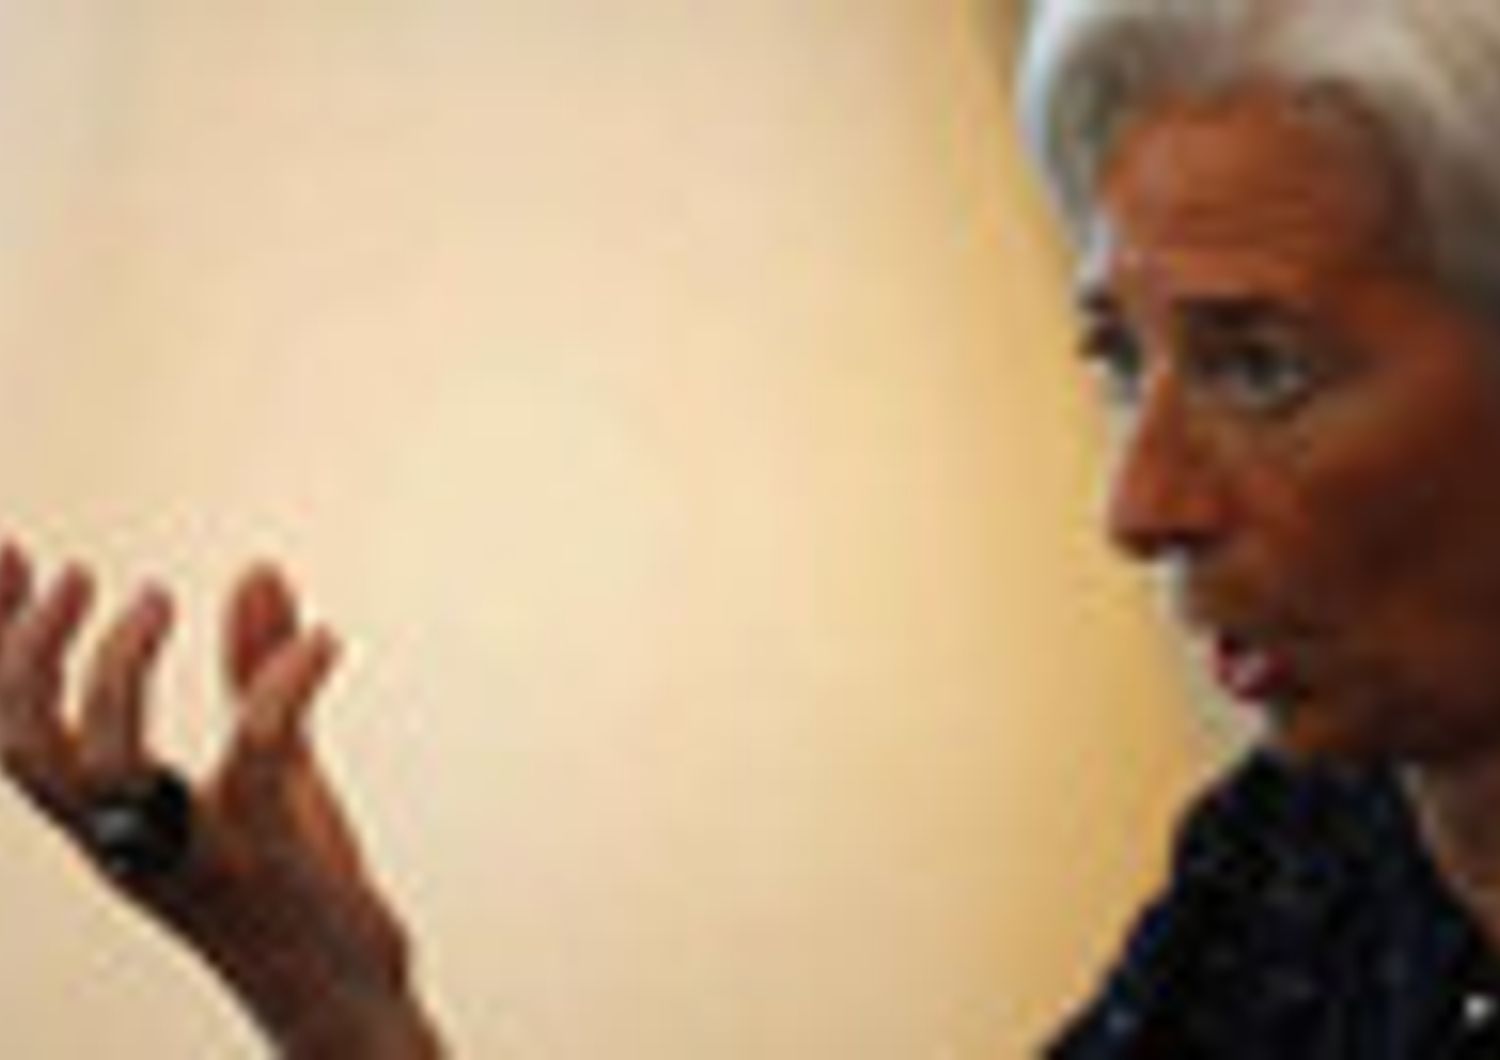 FMI: PECHINO APPOGGIA LA CANDIDATURA DI LAGARDE